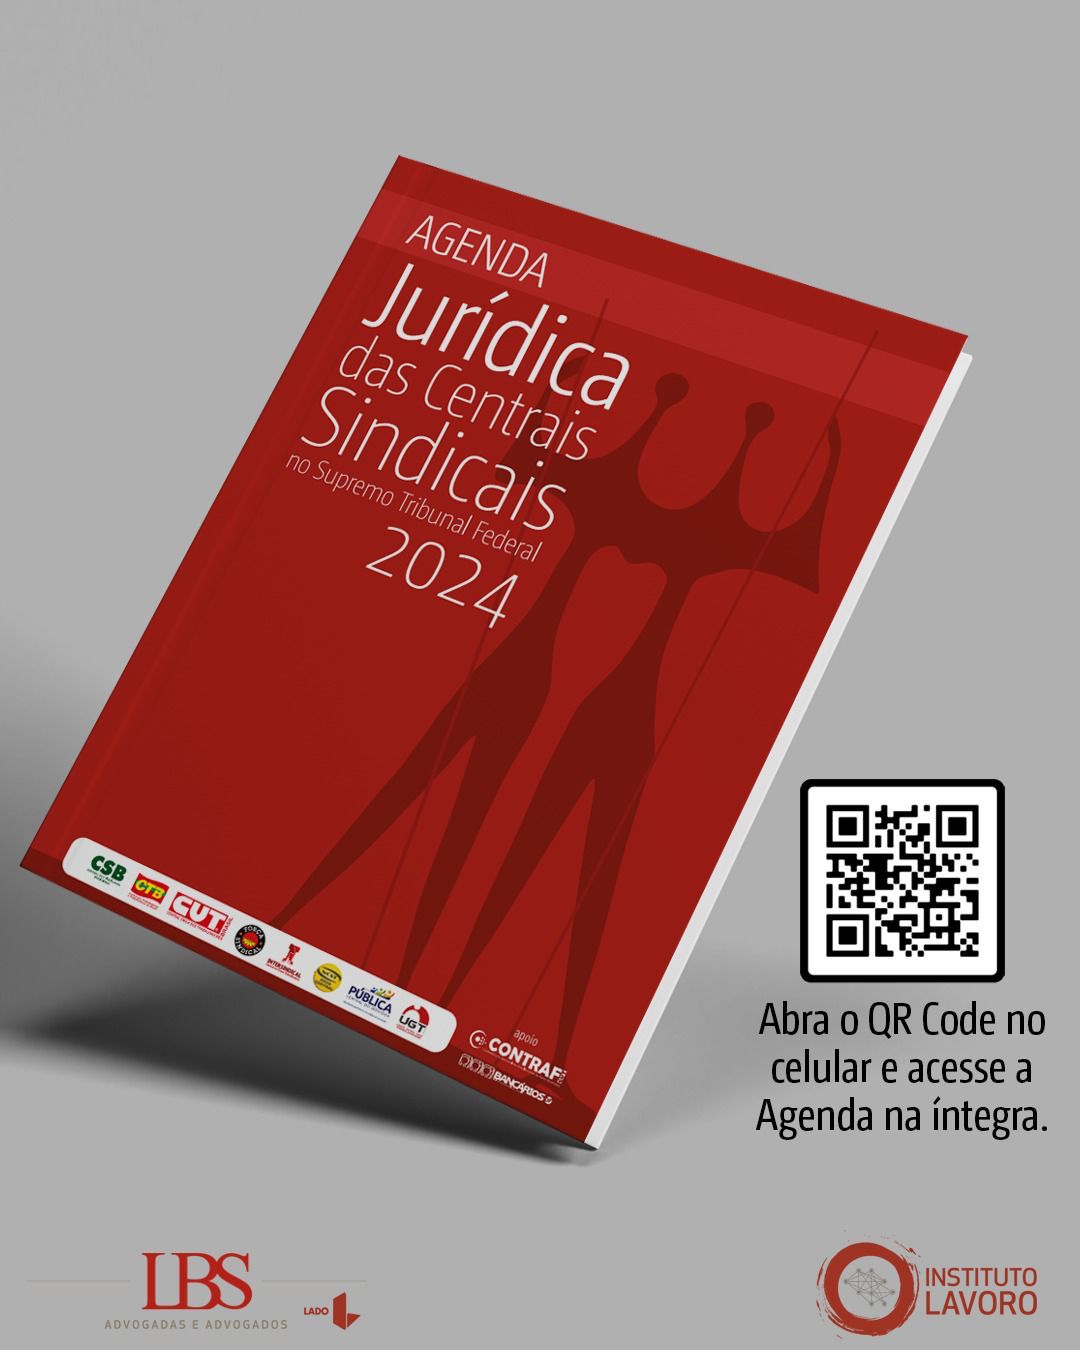 Centrais lançam Agenda Jurídica durante Plenária Nacional